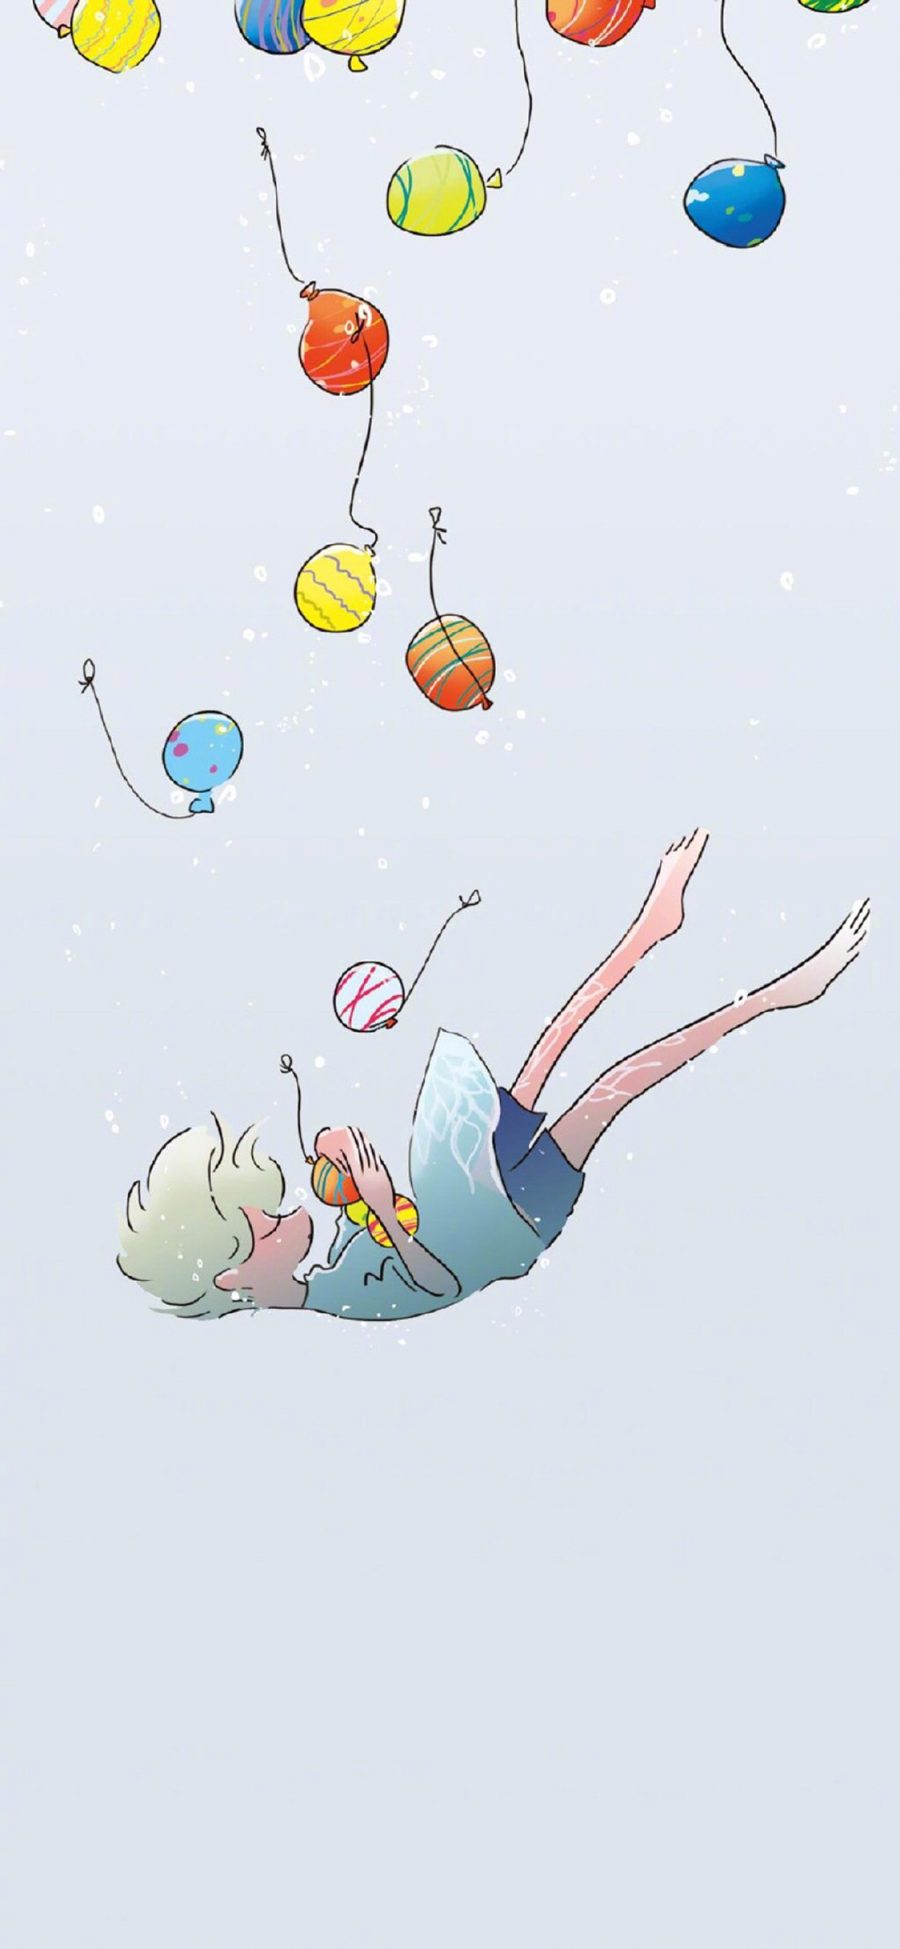 [2436×1125]插图 卡通 男孩 气球 苹果手机动漫壁纸图片